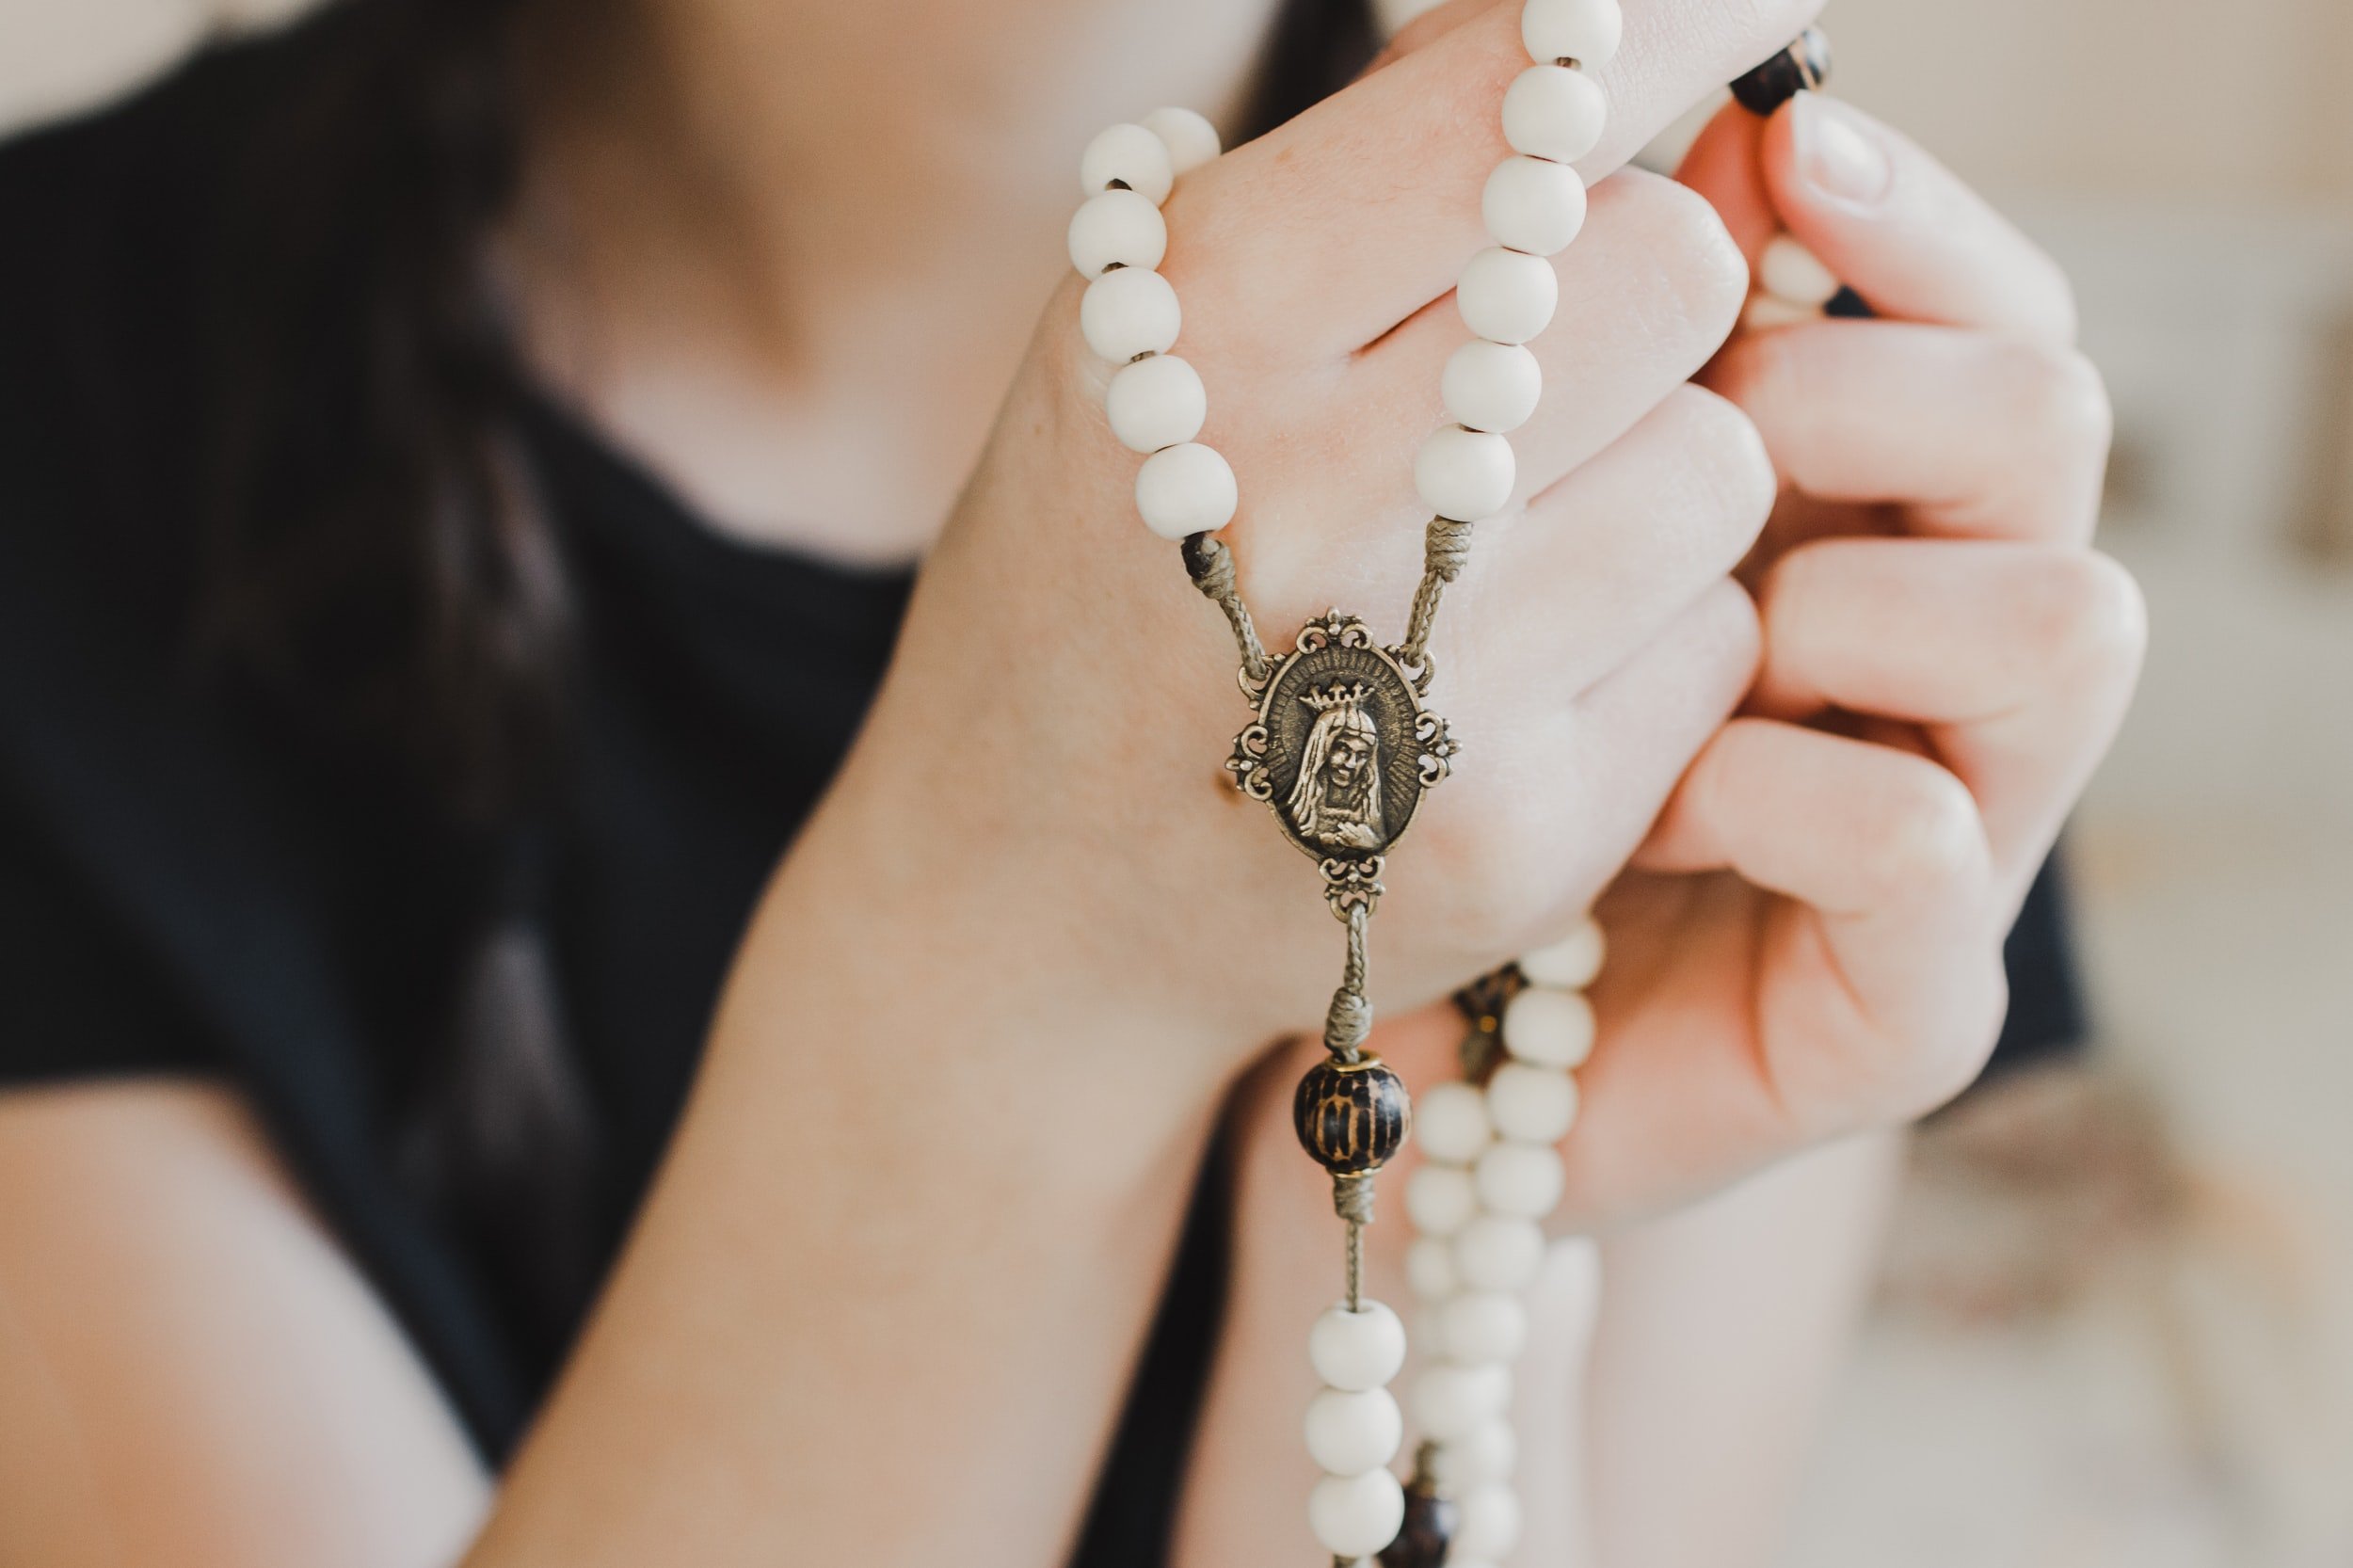 Holy Mary': Pray the Rosary for Peace – Catholic Philly